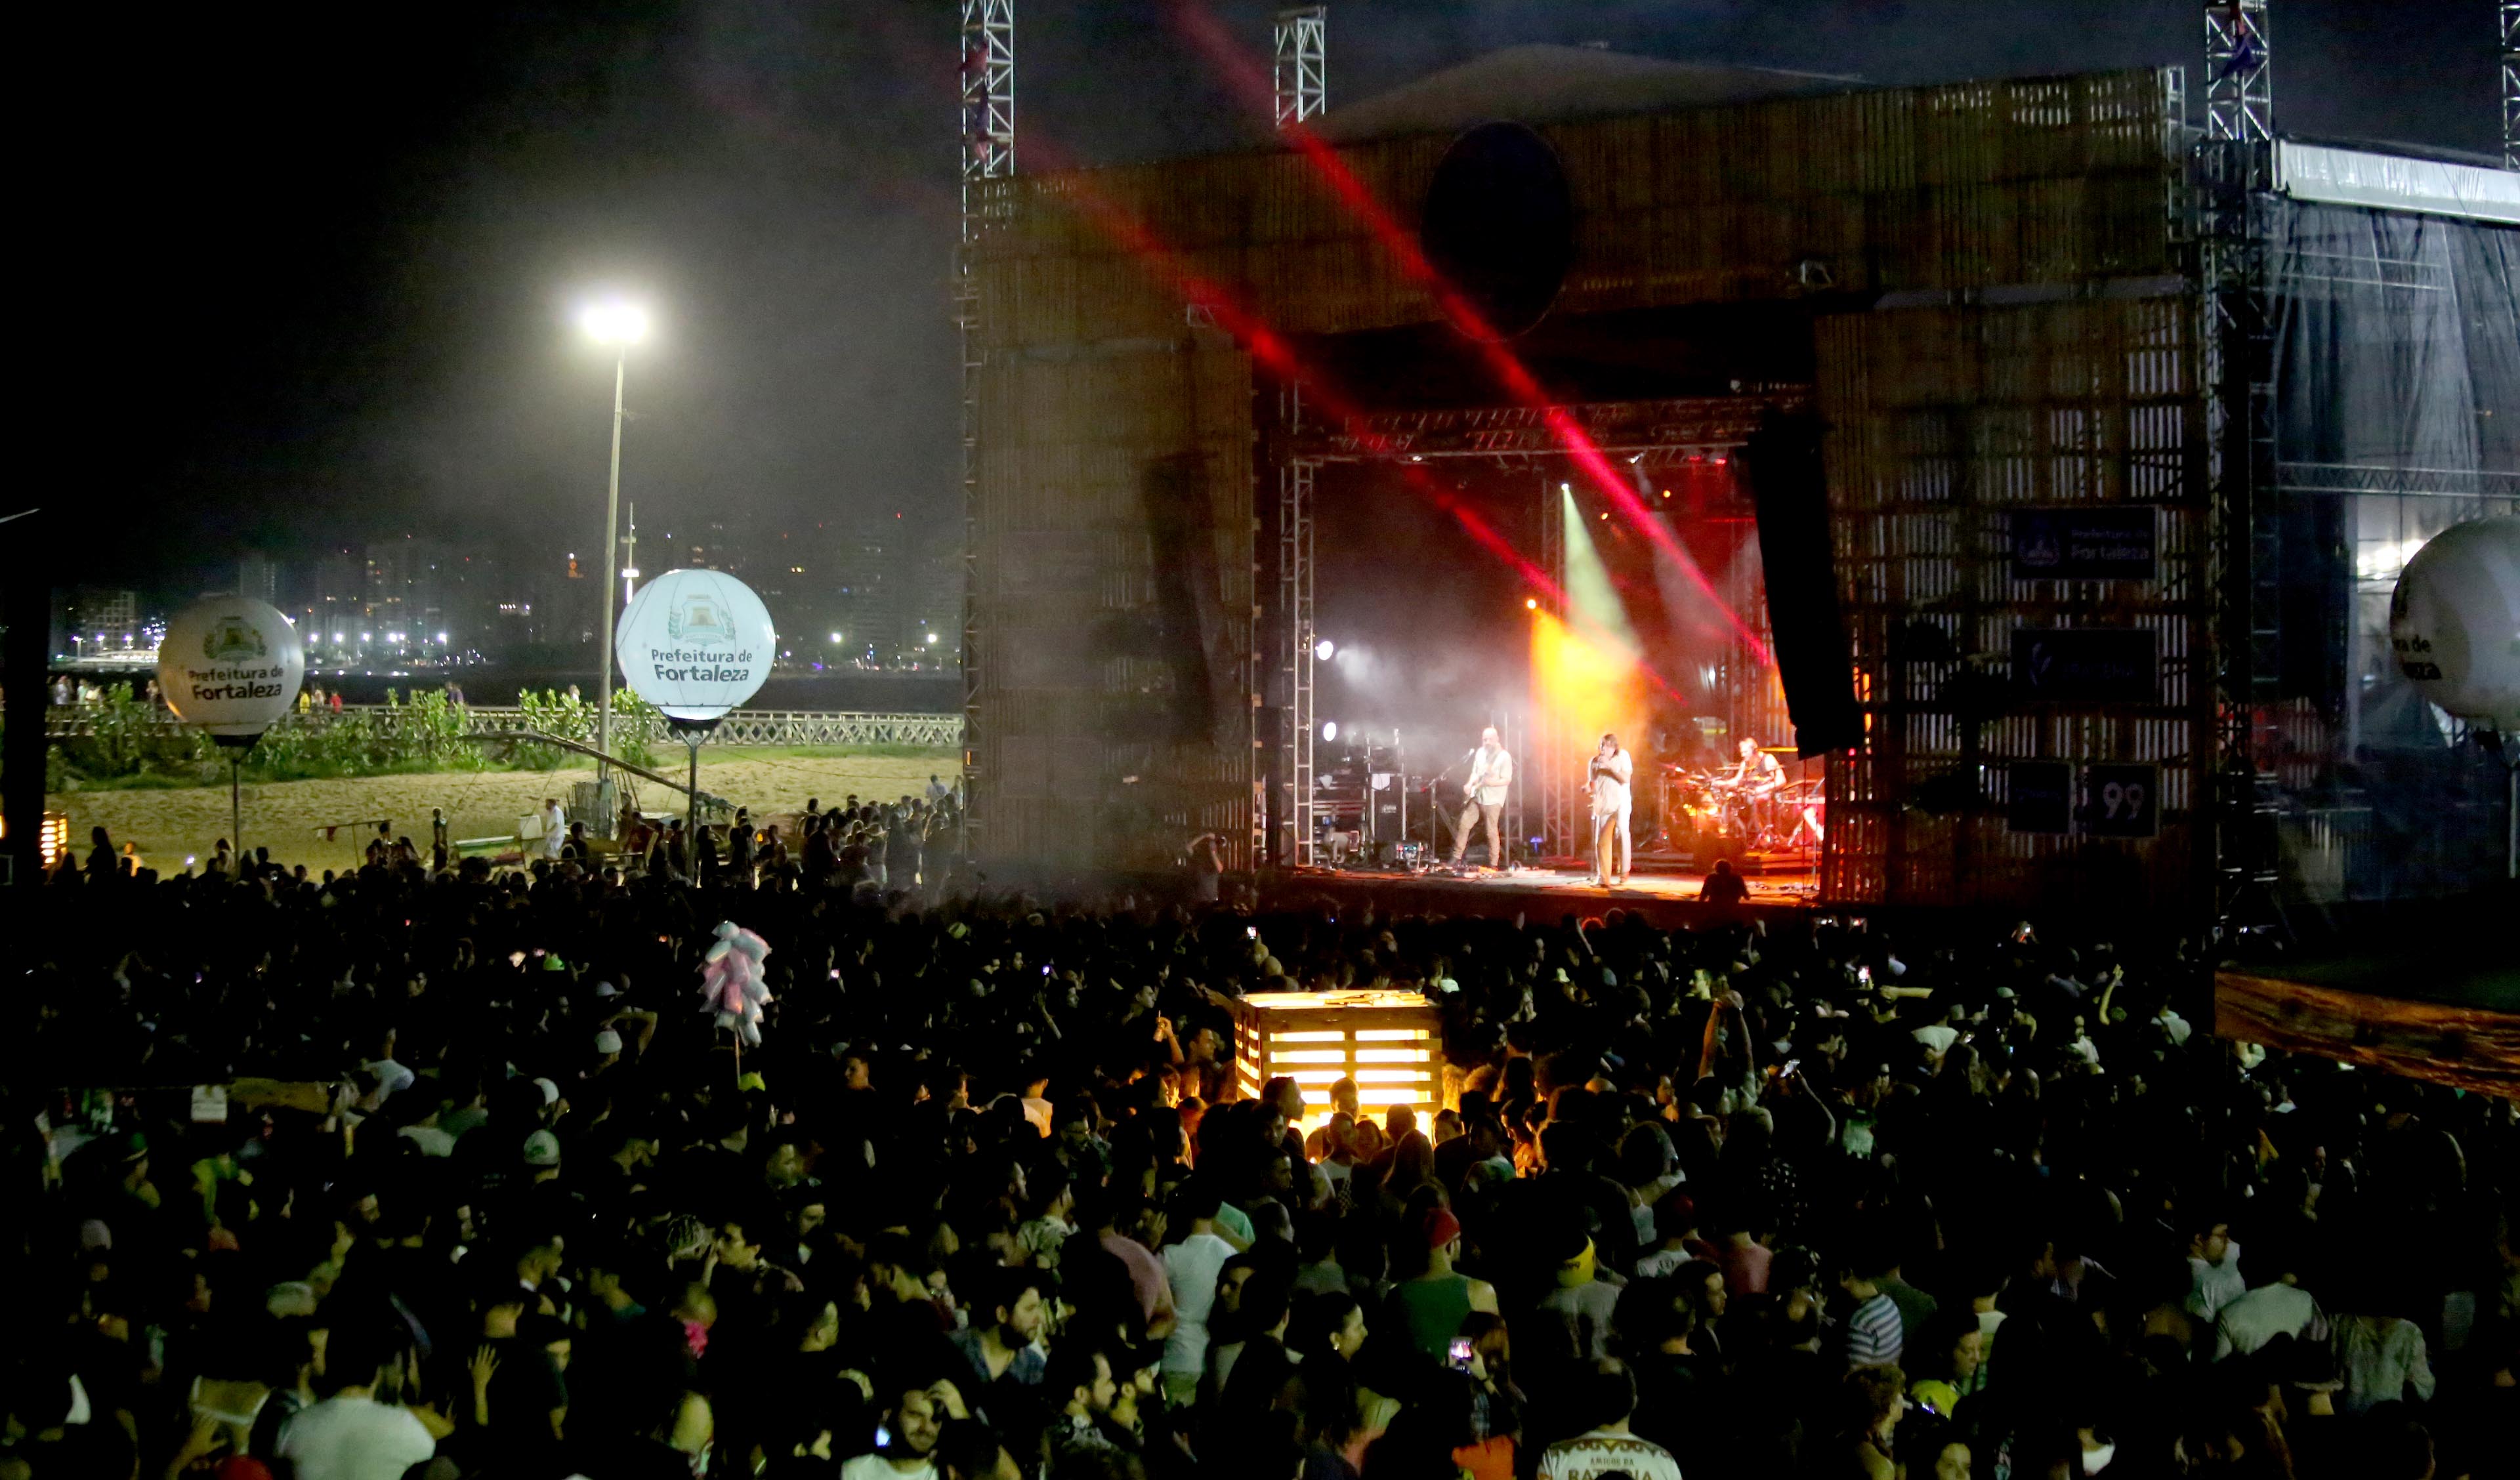 a foto mostra o palco de shows montado na praia de iracema, com público assistindo